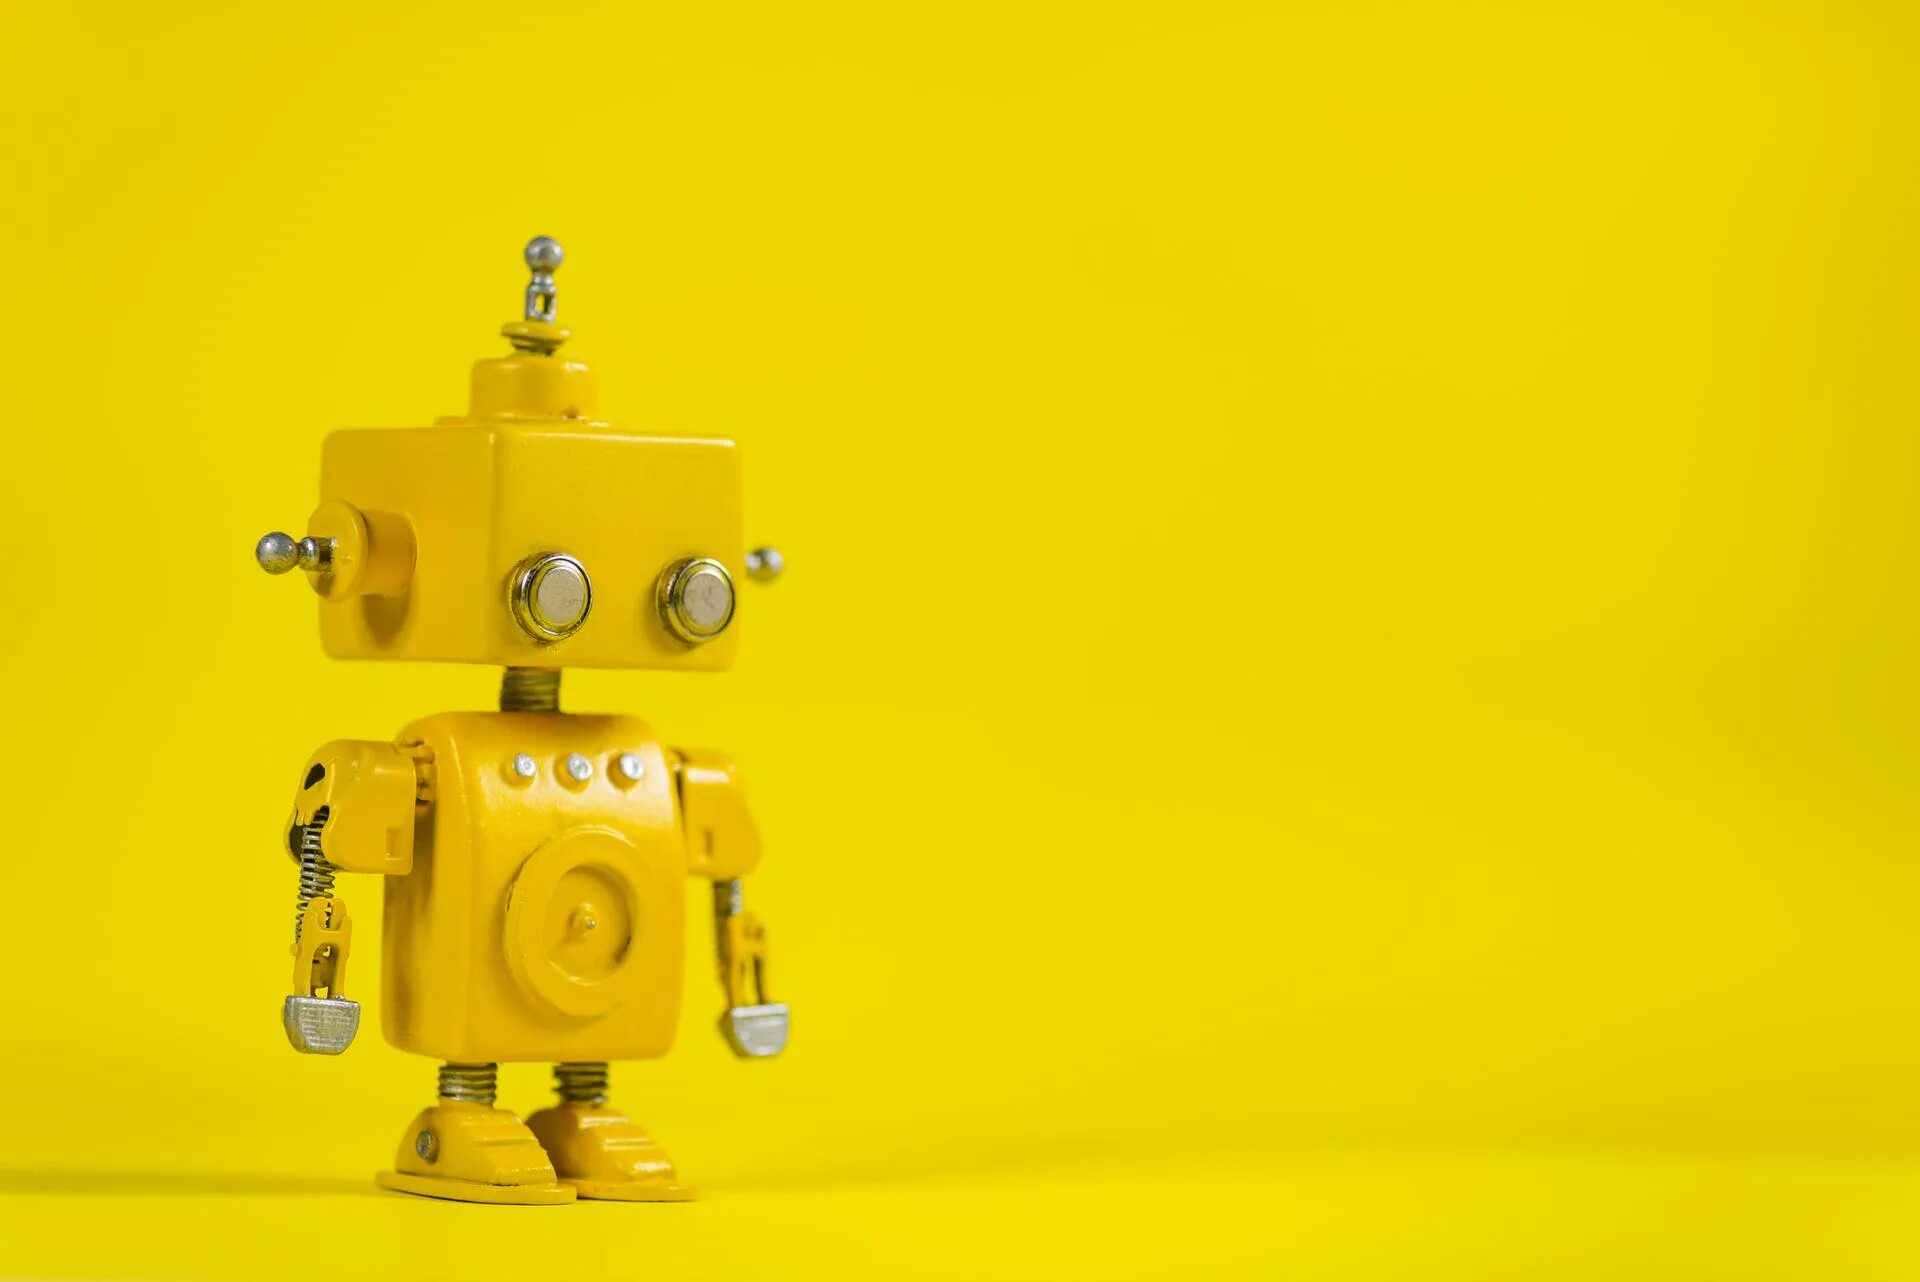 Малыш в желтом робот. Желтый робот. Робот на желтом фоне. Желтый робот игрушка. Робототехника фон.